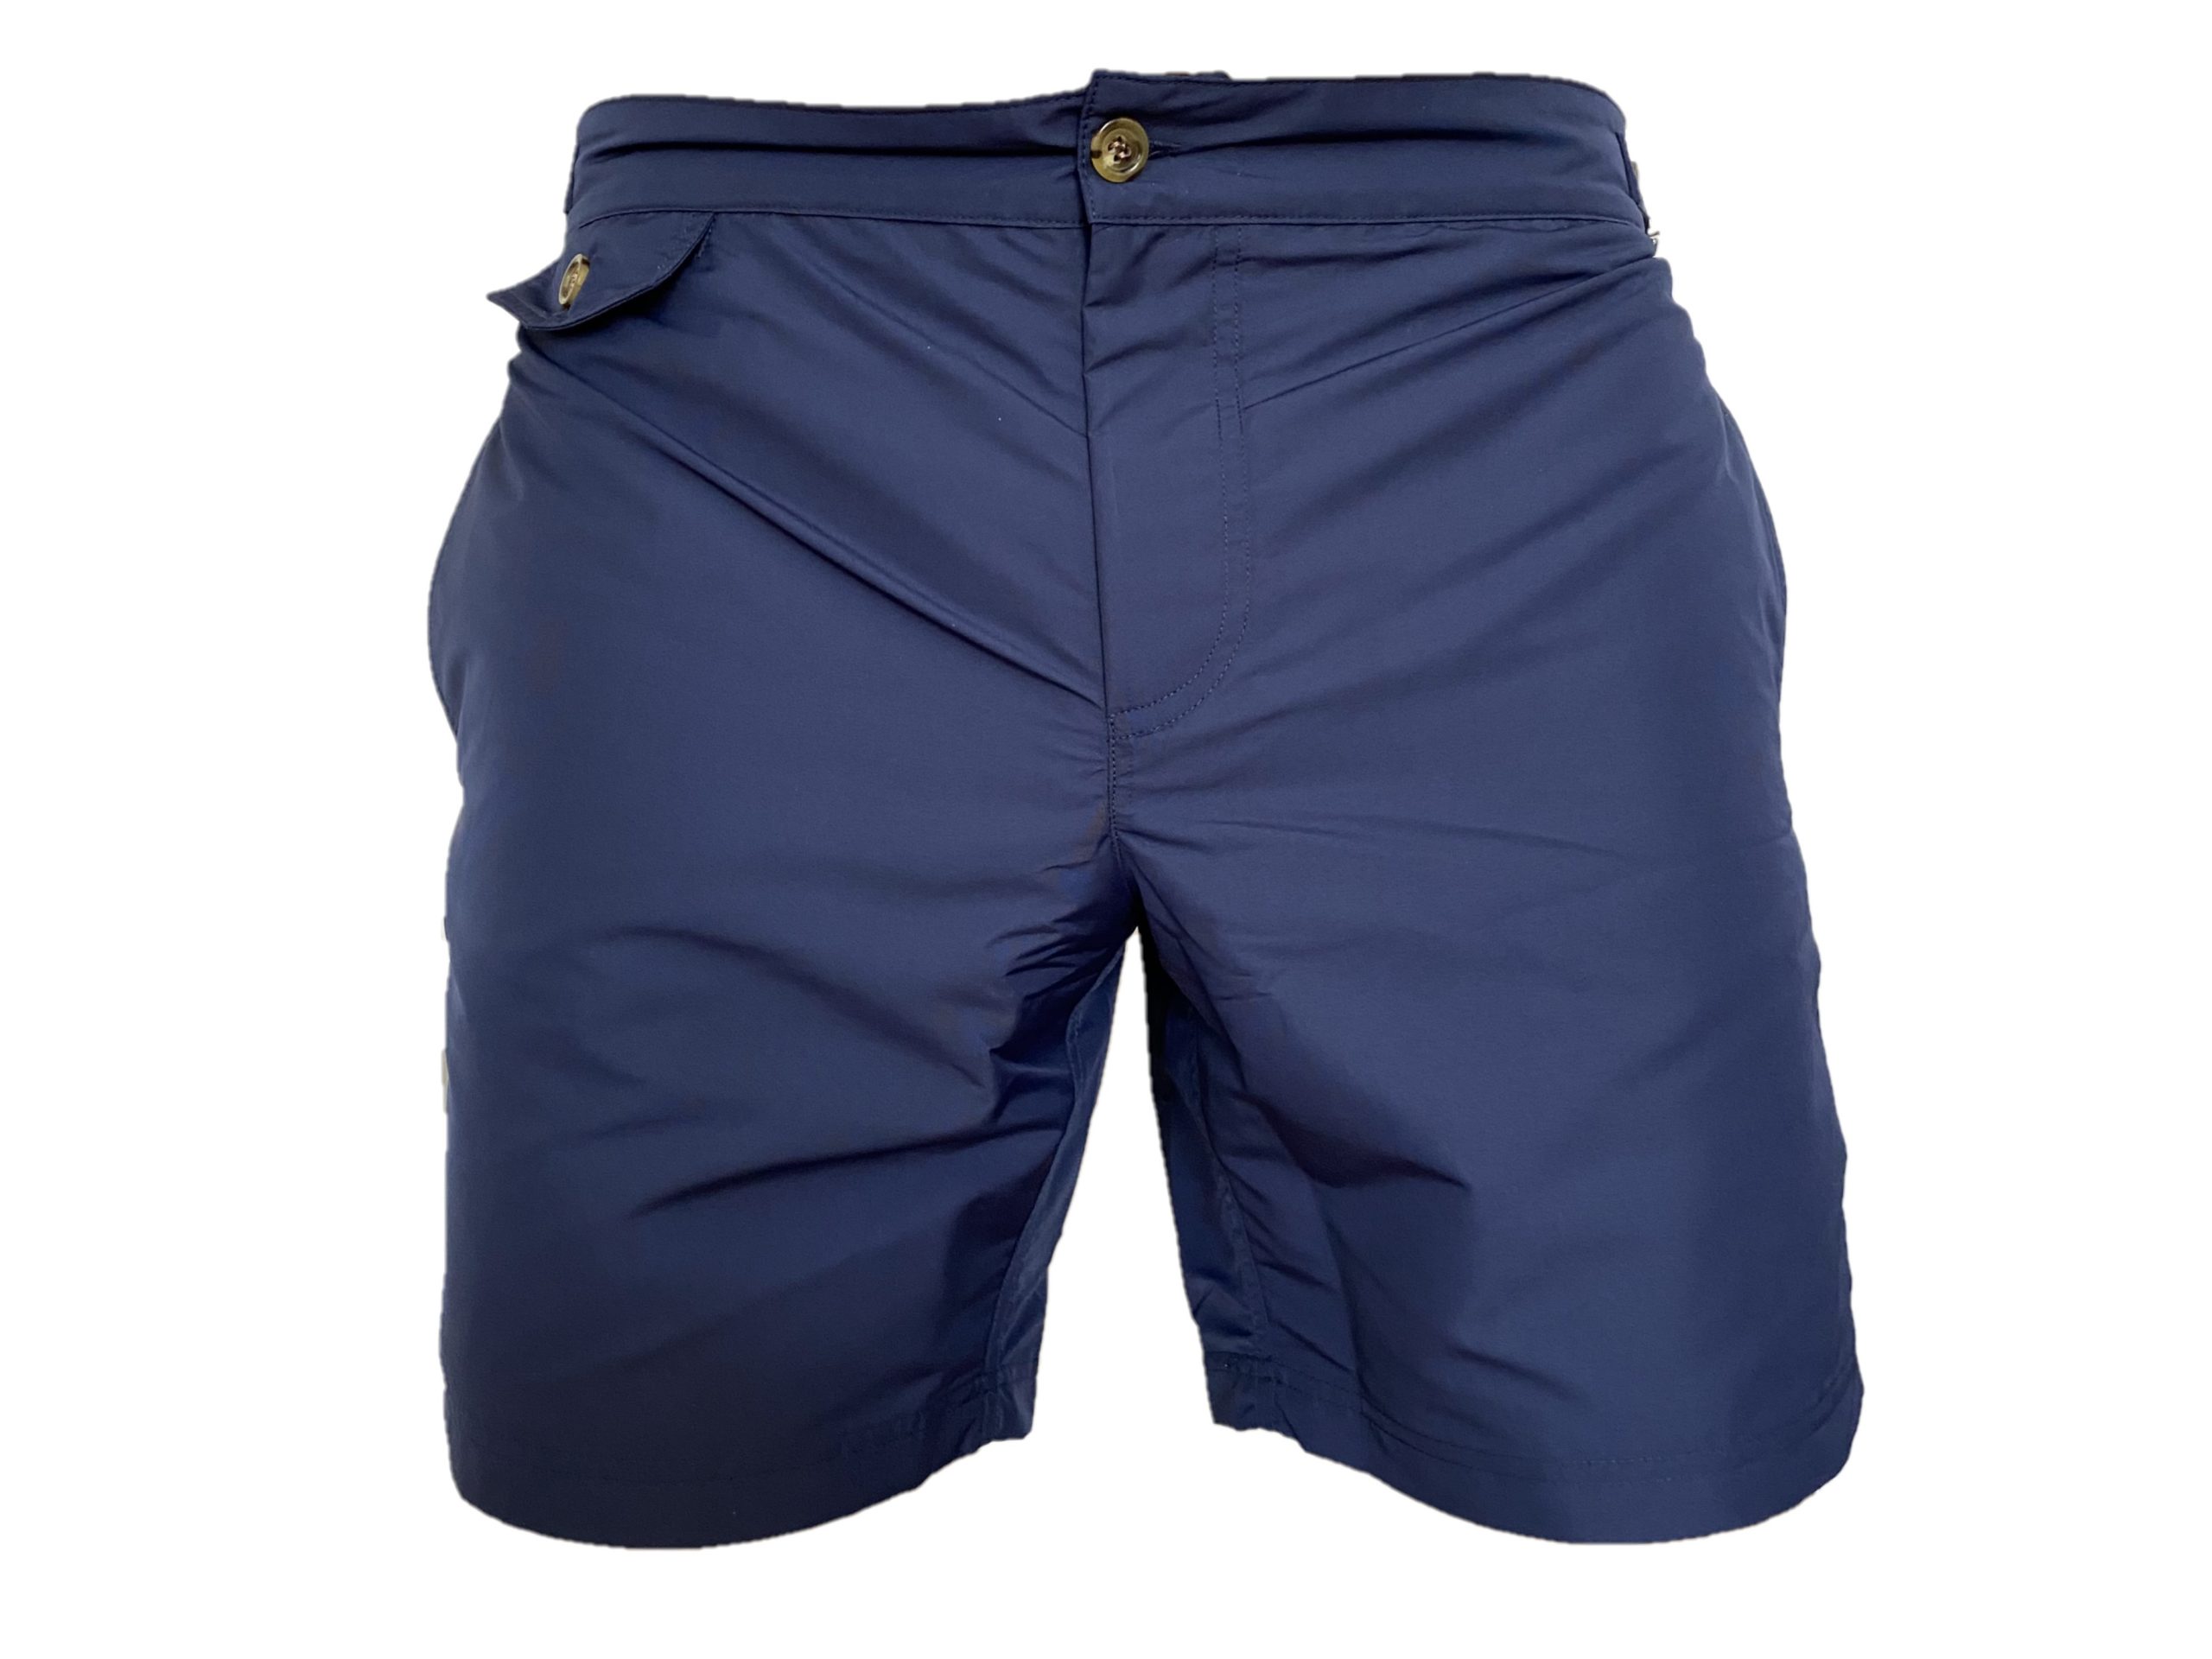 navy blue swim shorts